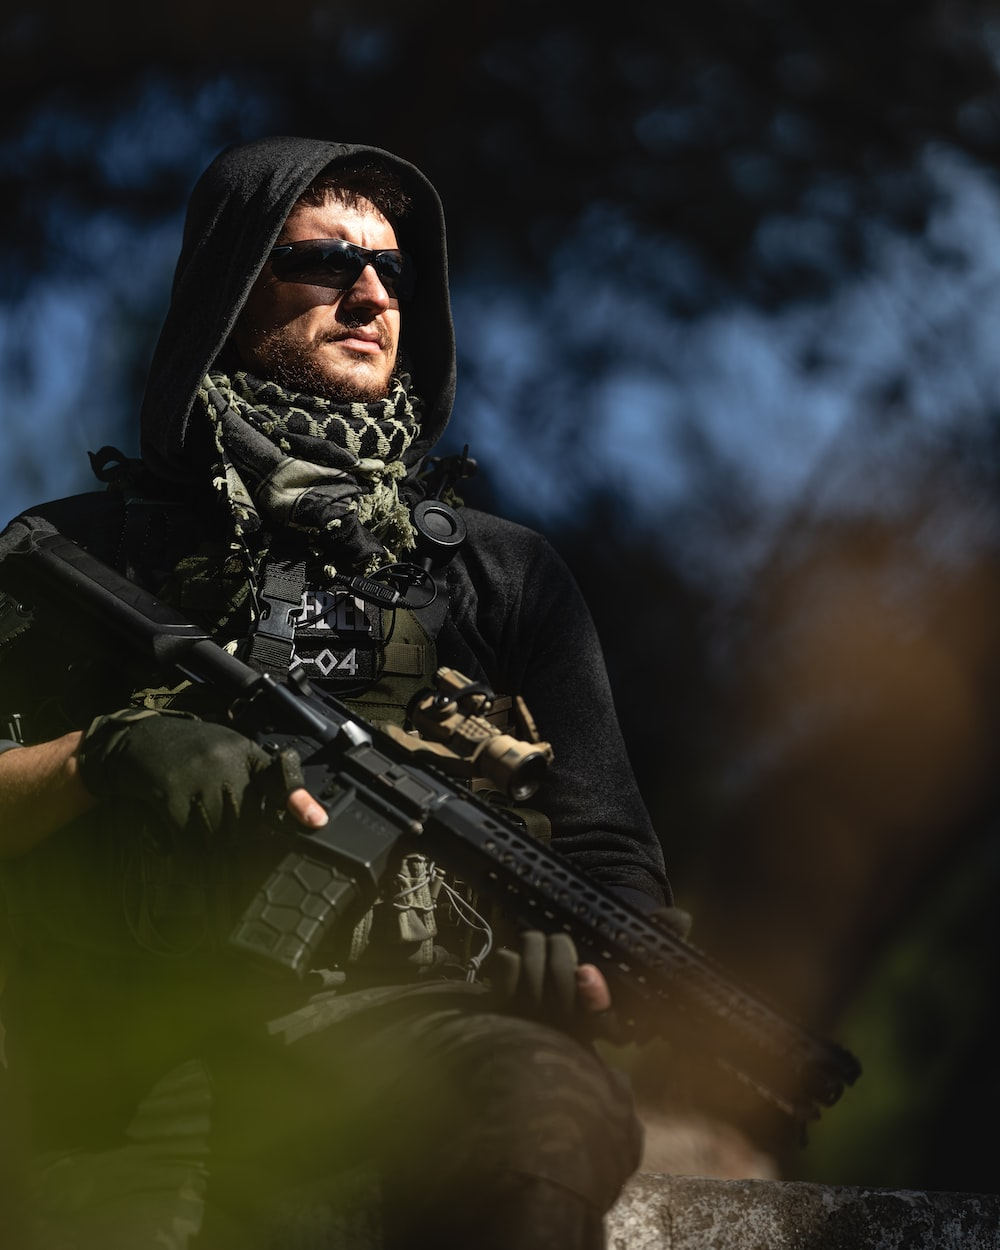 A rebel soldier holding an assault rifle